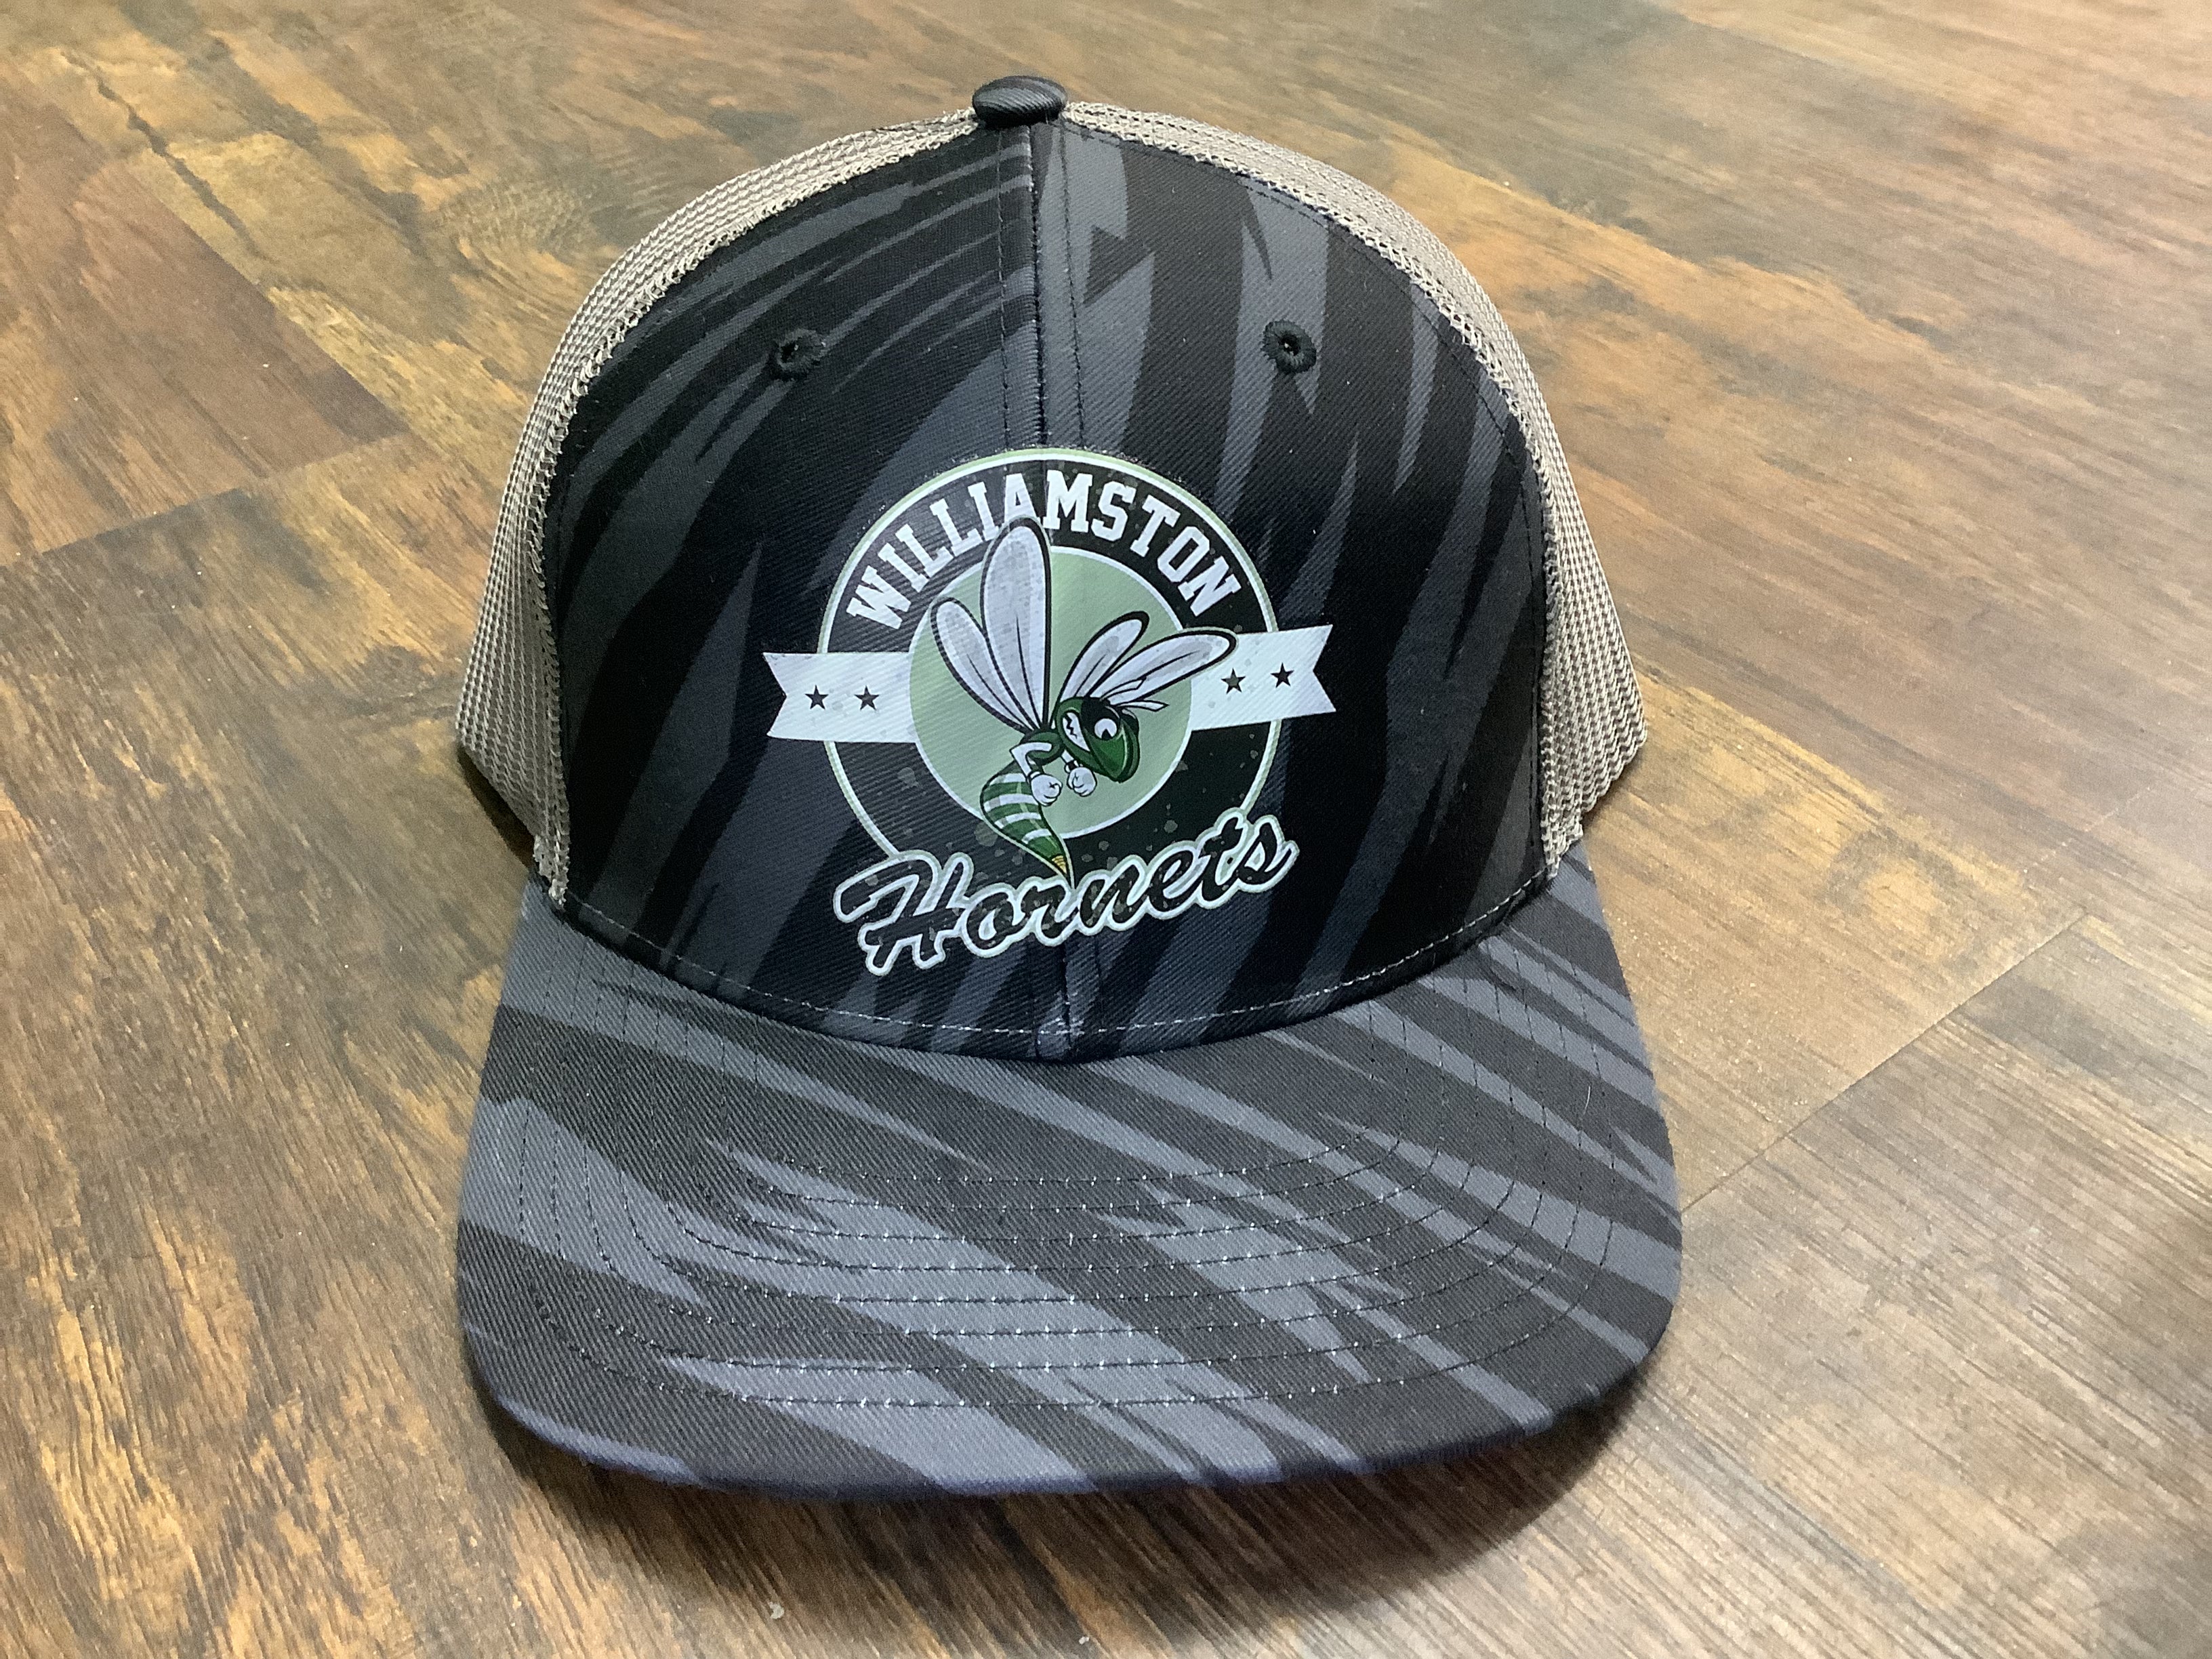 "Williamston Hornets/Hornet" - Streak Black/Charcoal - Pressed Hat